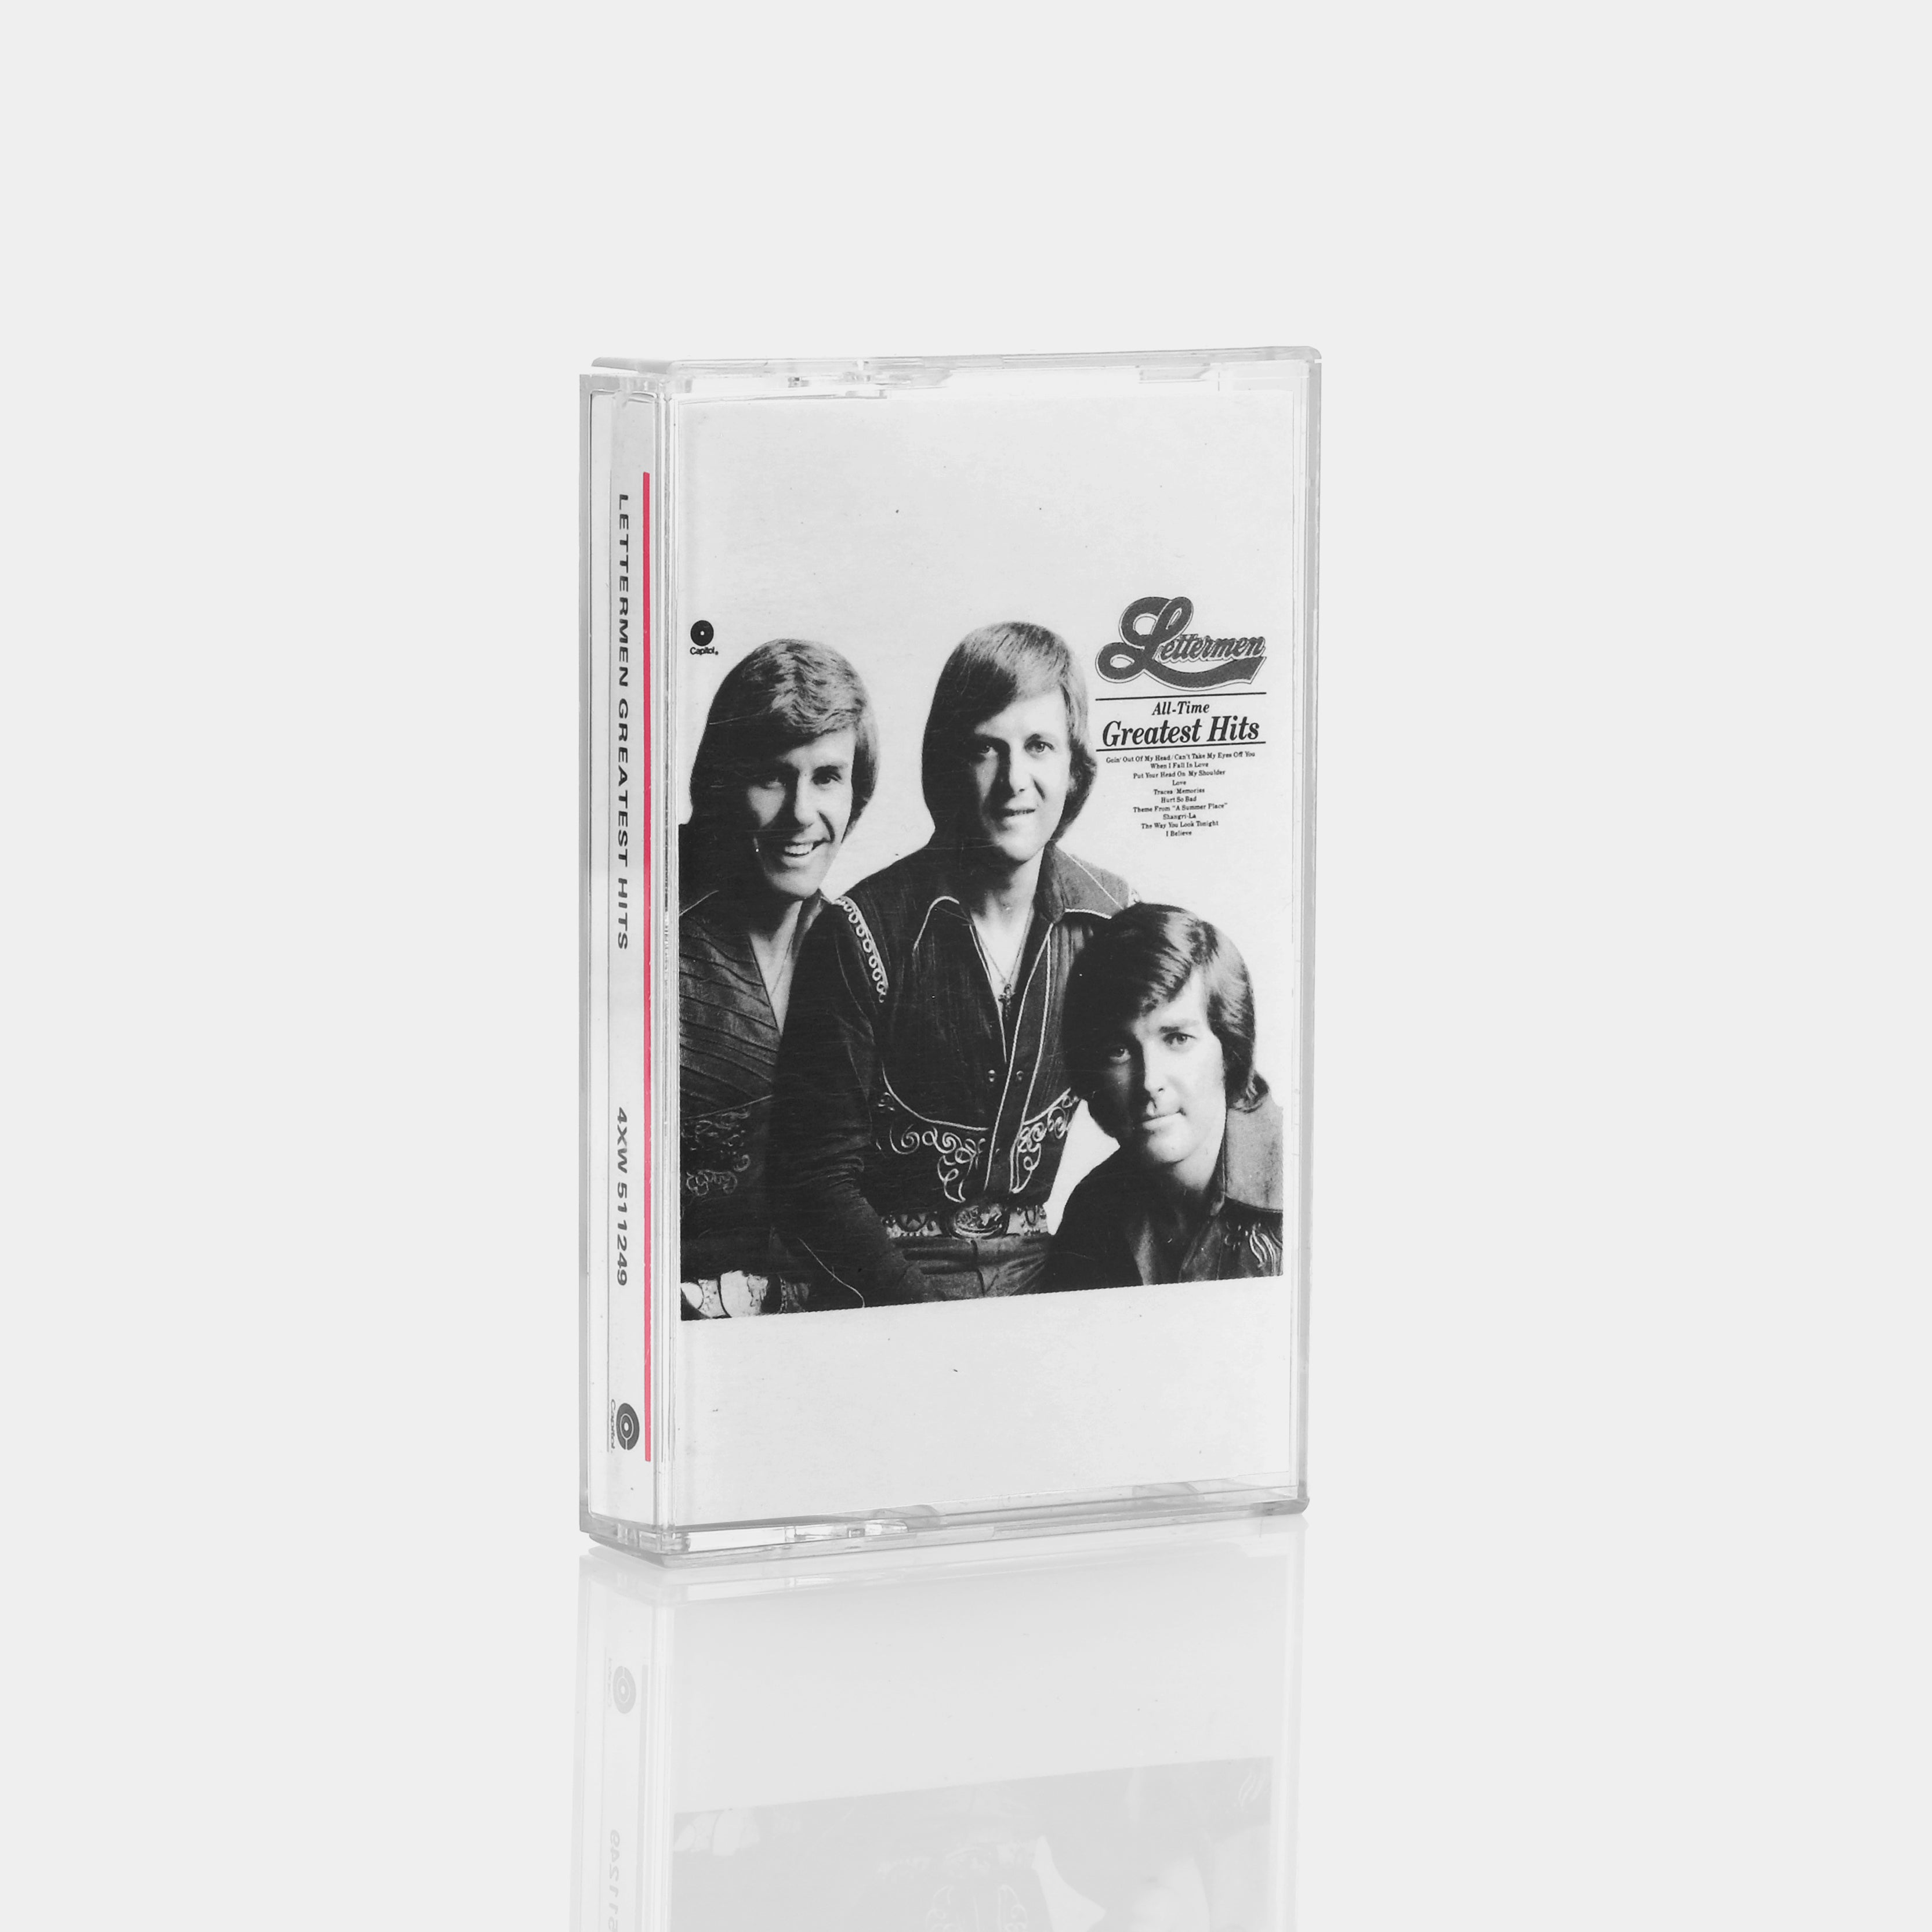 Lettermen - Greatest Hits Cassette Tape